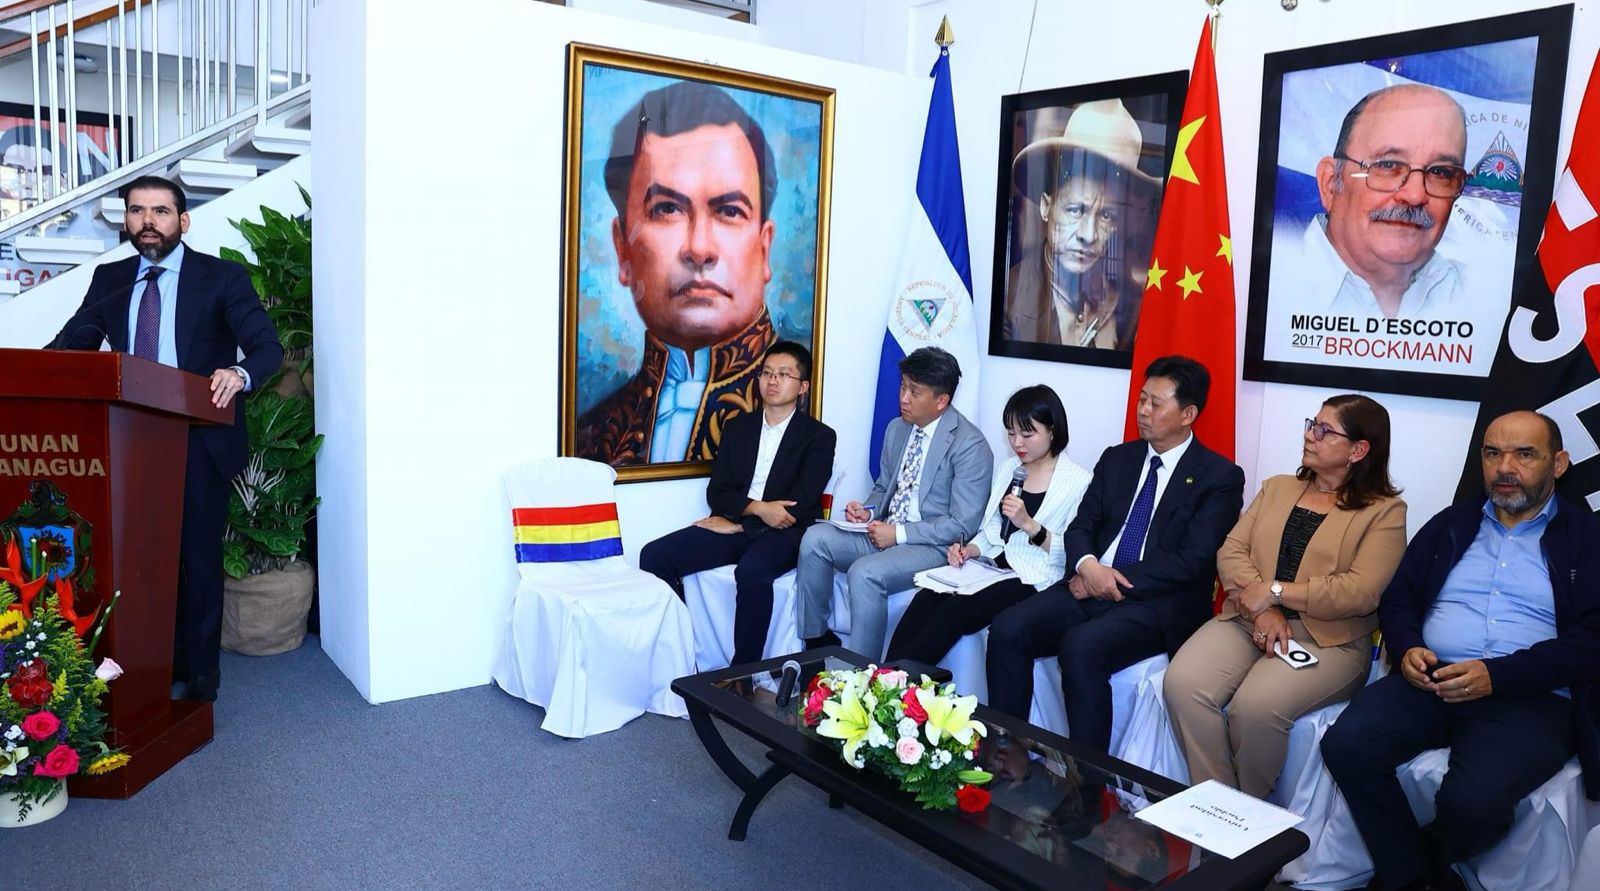 UNAN-Managua recibe visita de representantes de la Asociación del Pueblo Chino para la Paz y el Desarme